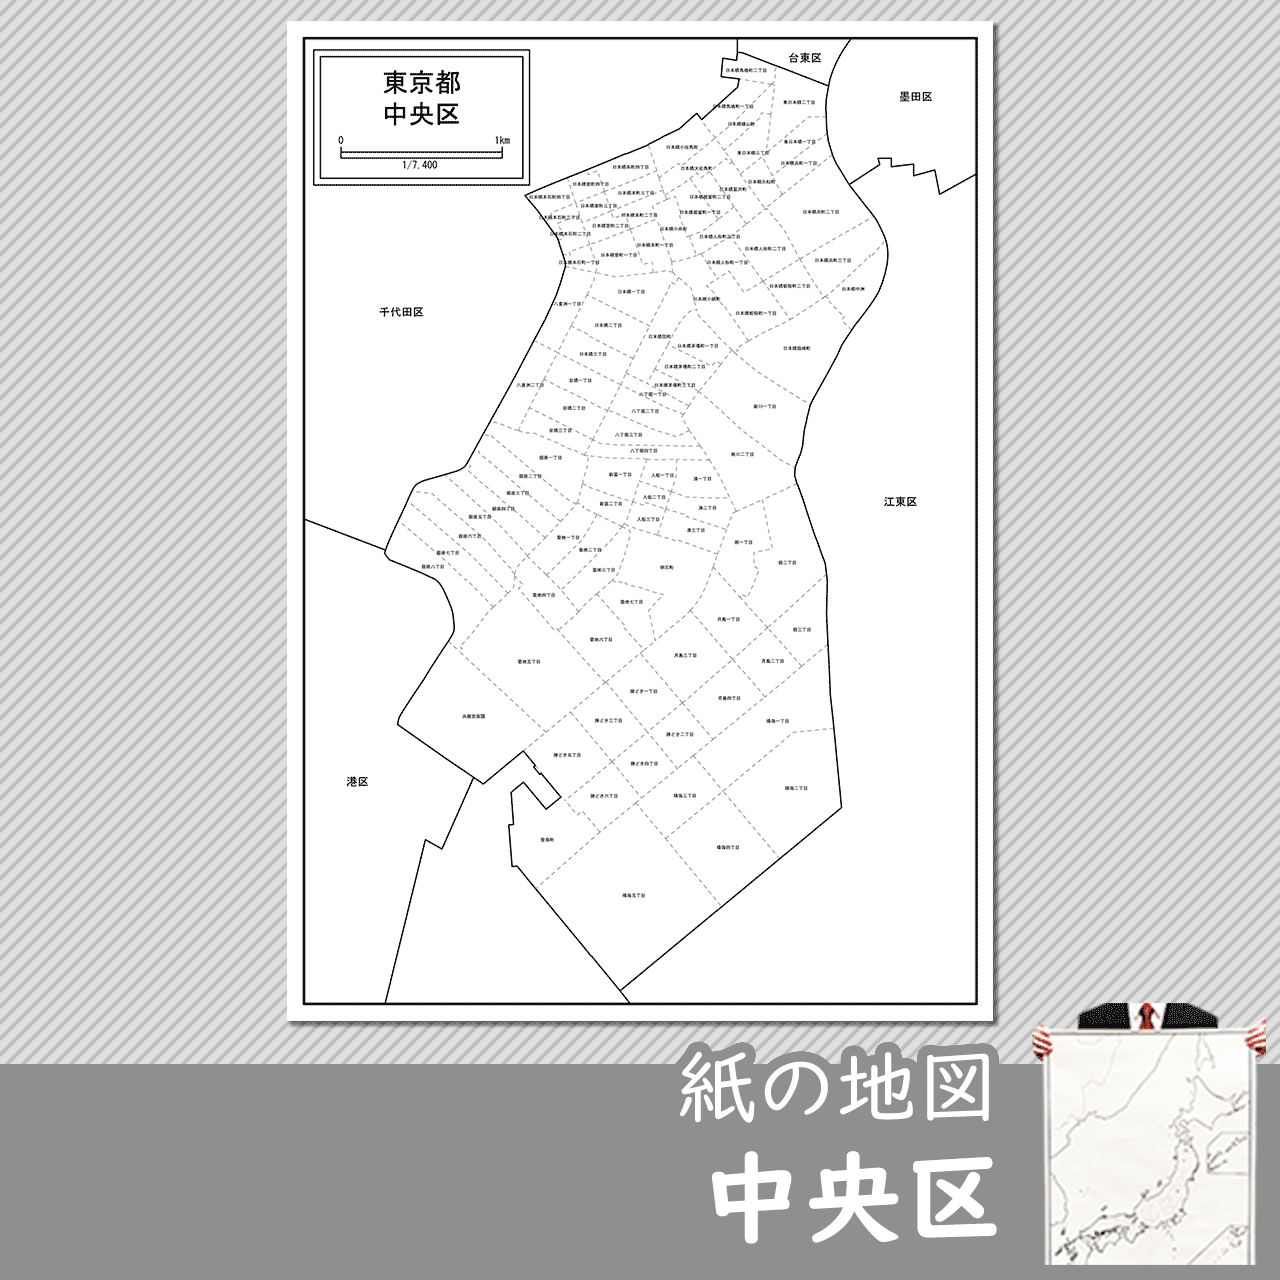 東京都中央区の紙の白地図のサムネイル